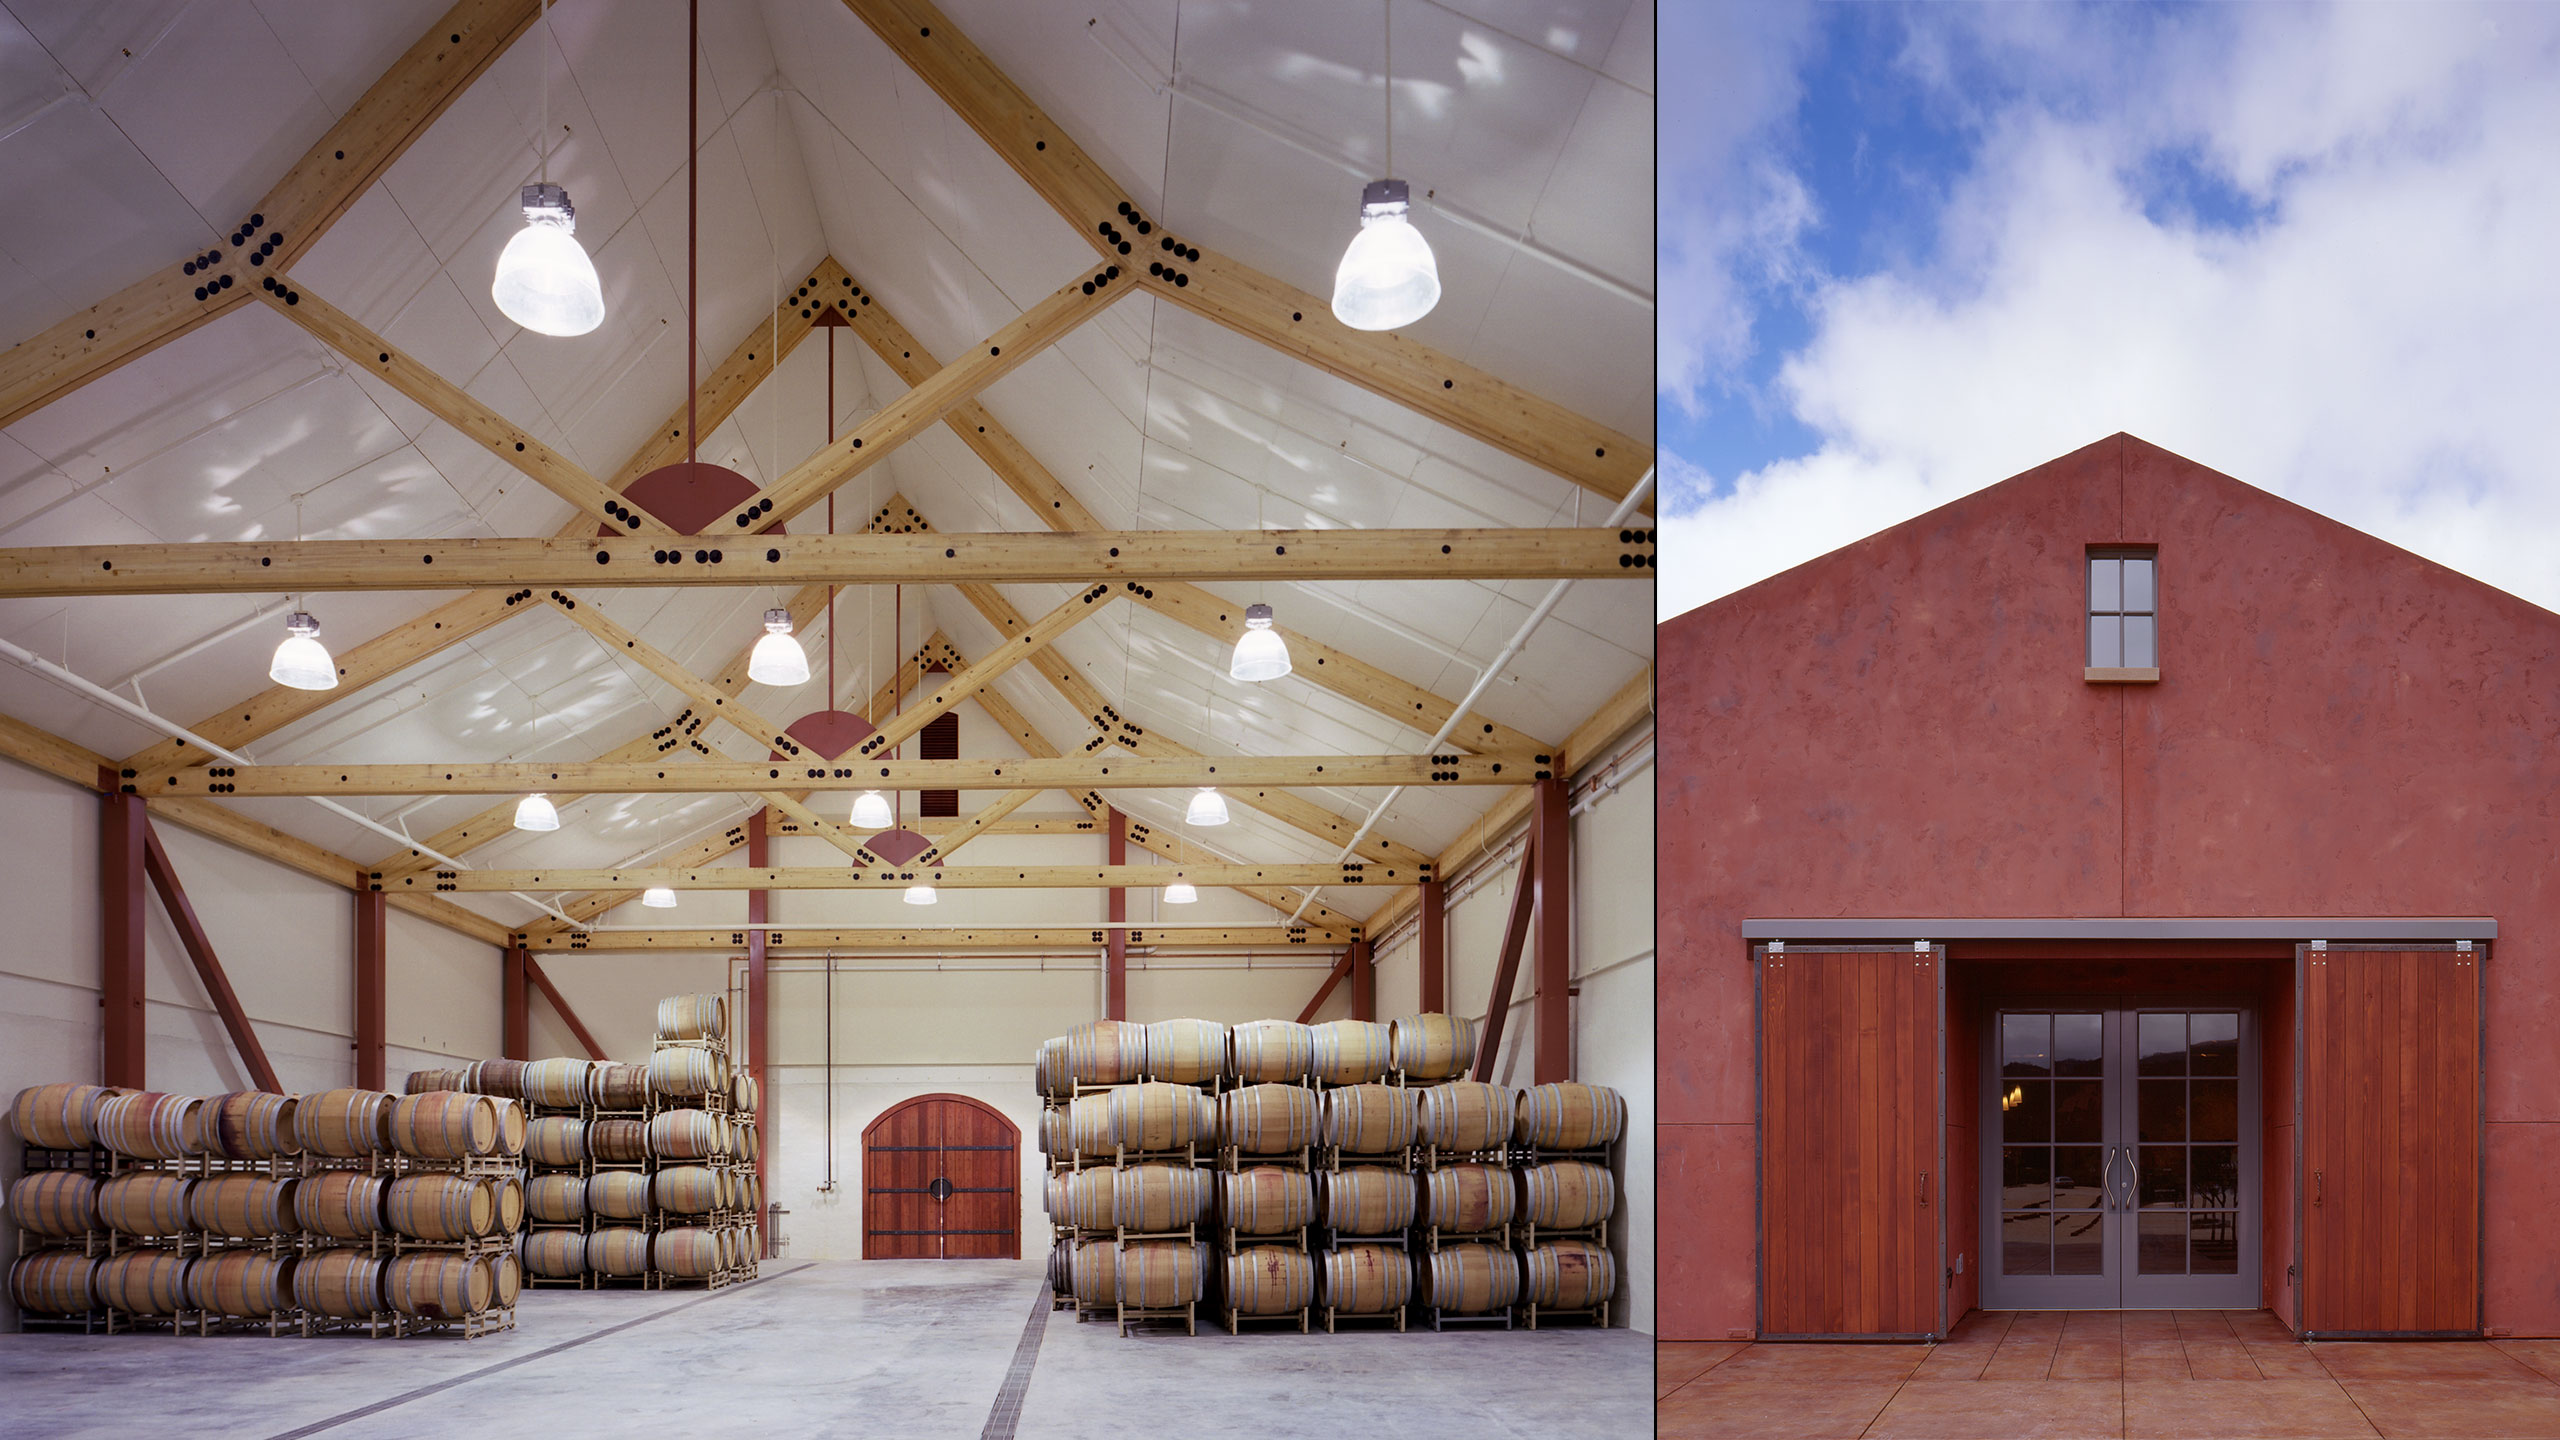 Winery-Architecture-Sonoma-County-VOM-barrel-cellar-interior